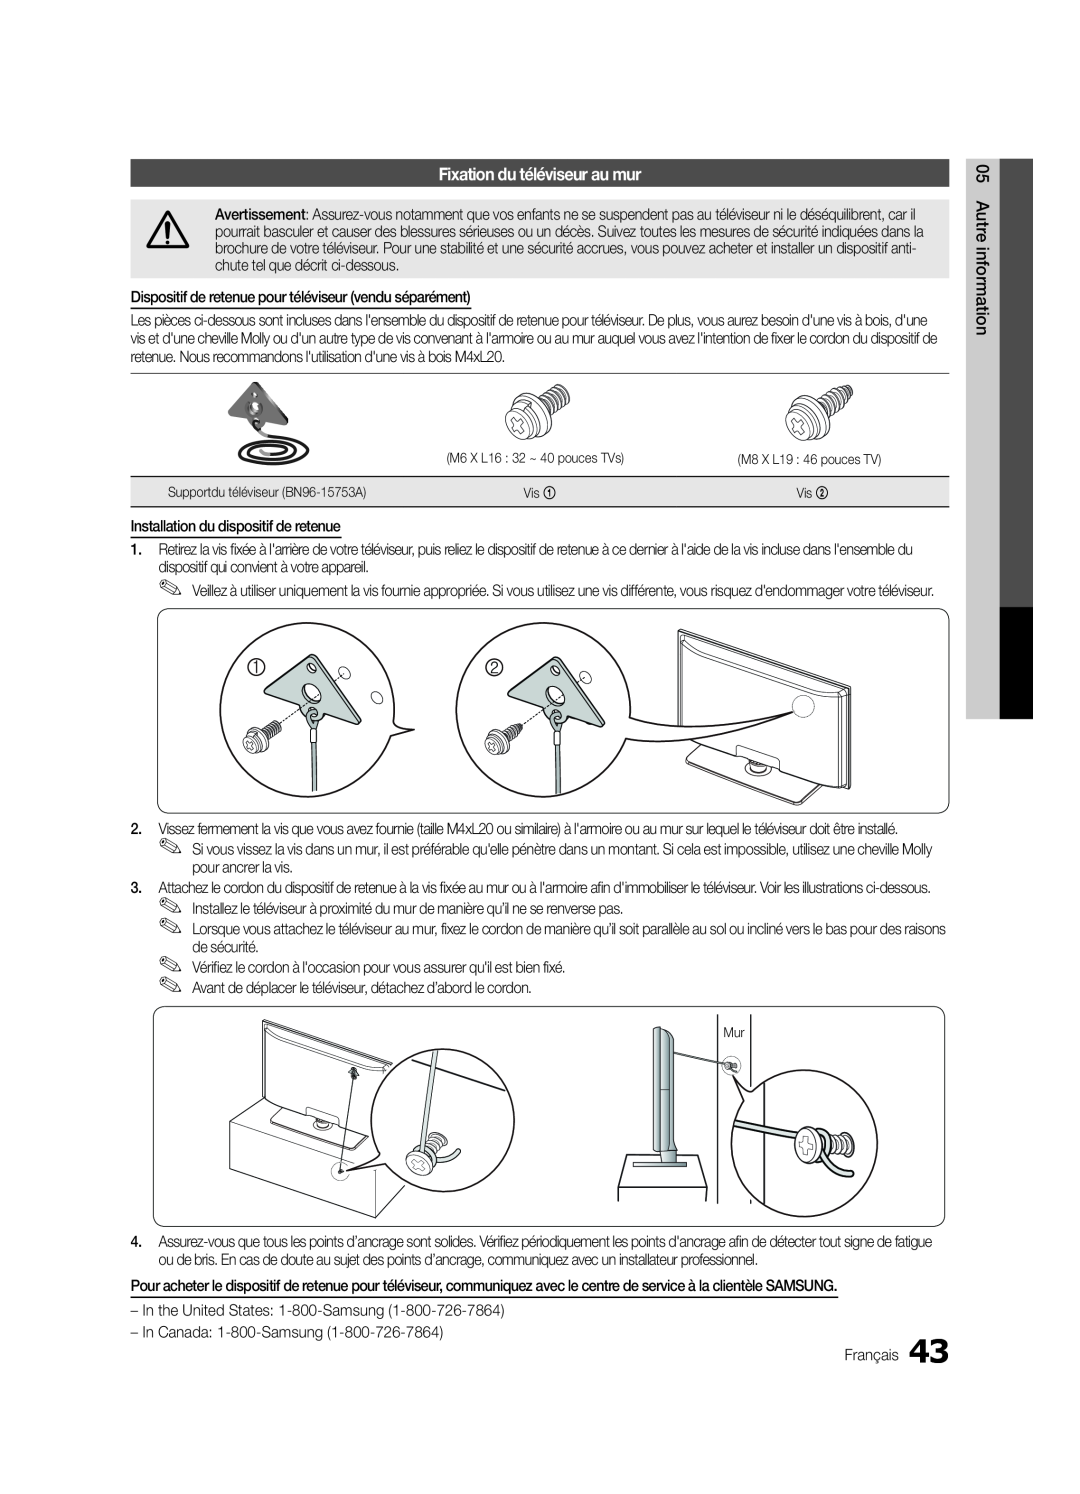 Samsung LN32C550 user manual Fixation du téléviseur au mur 